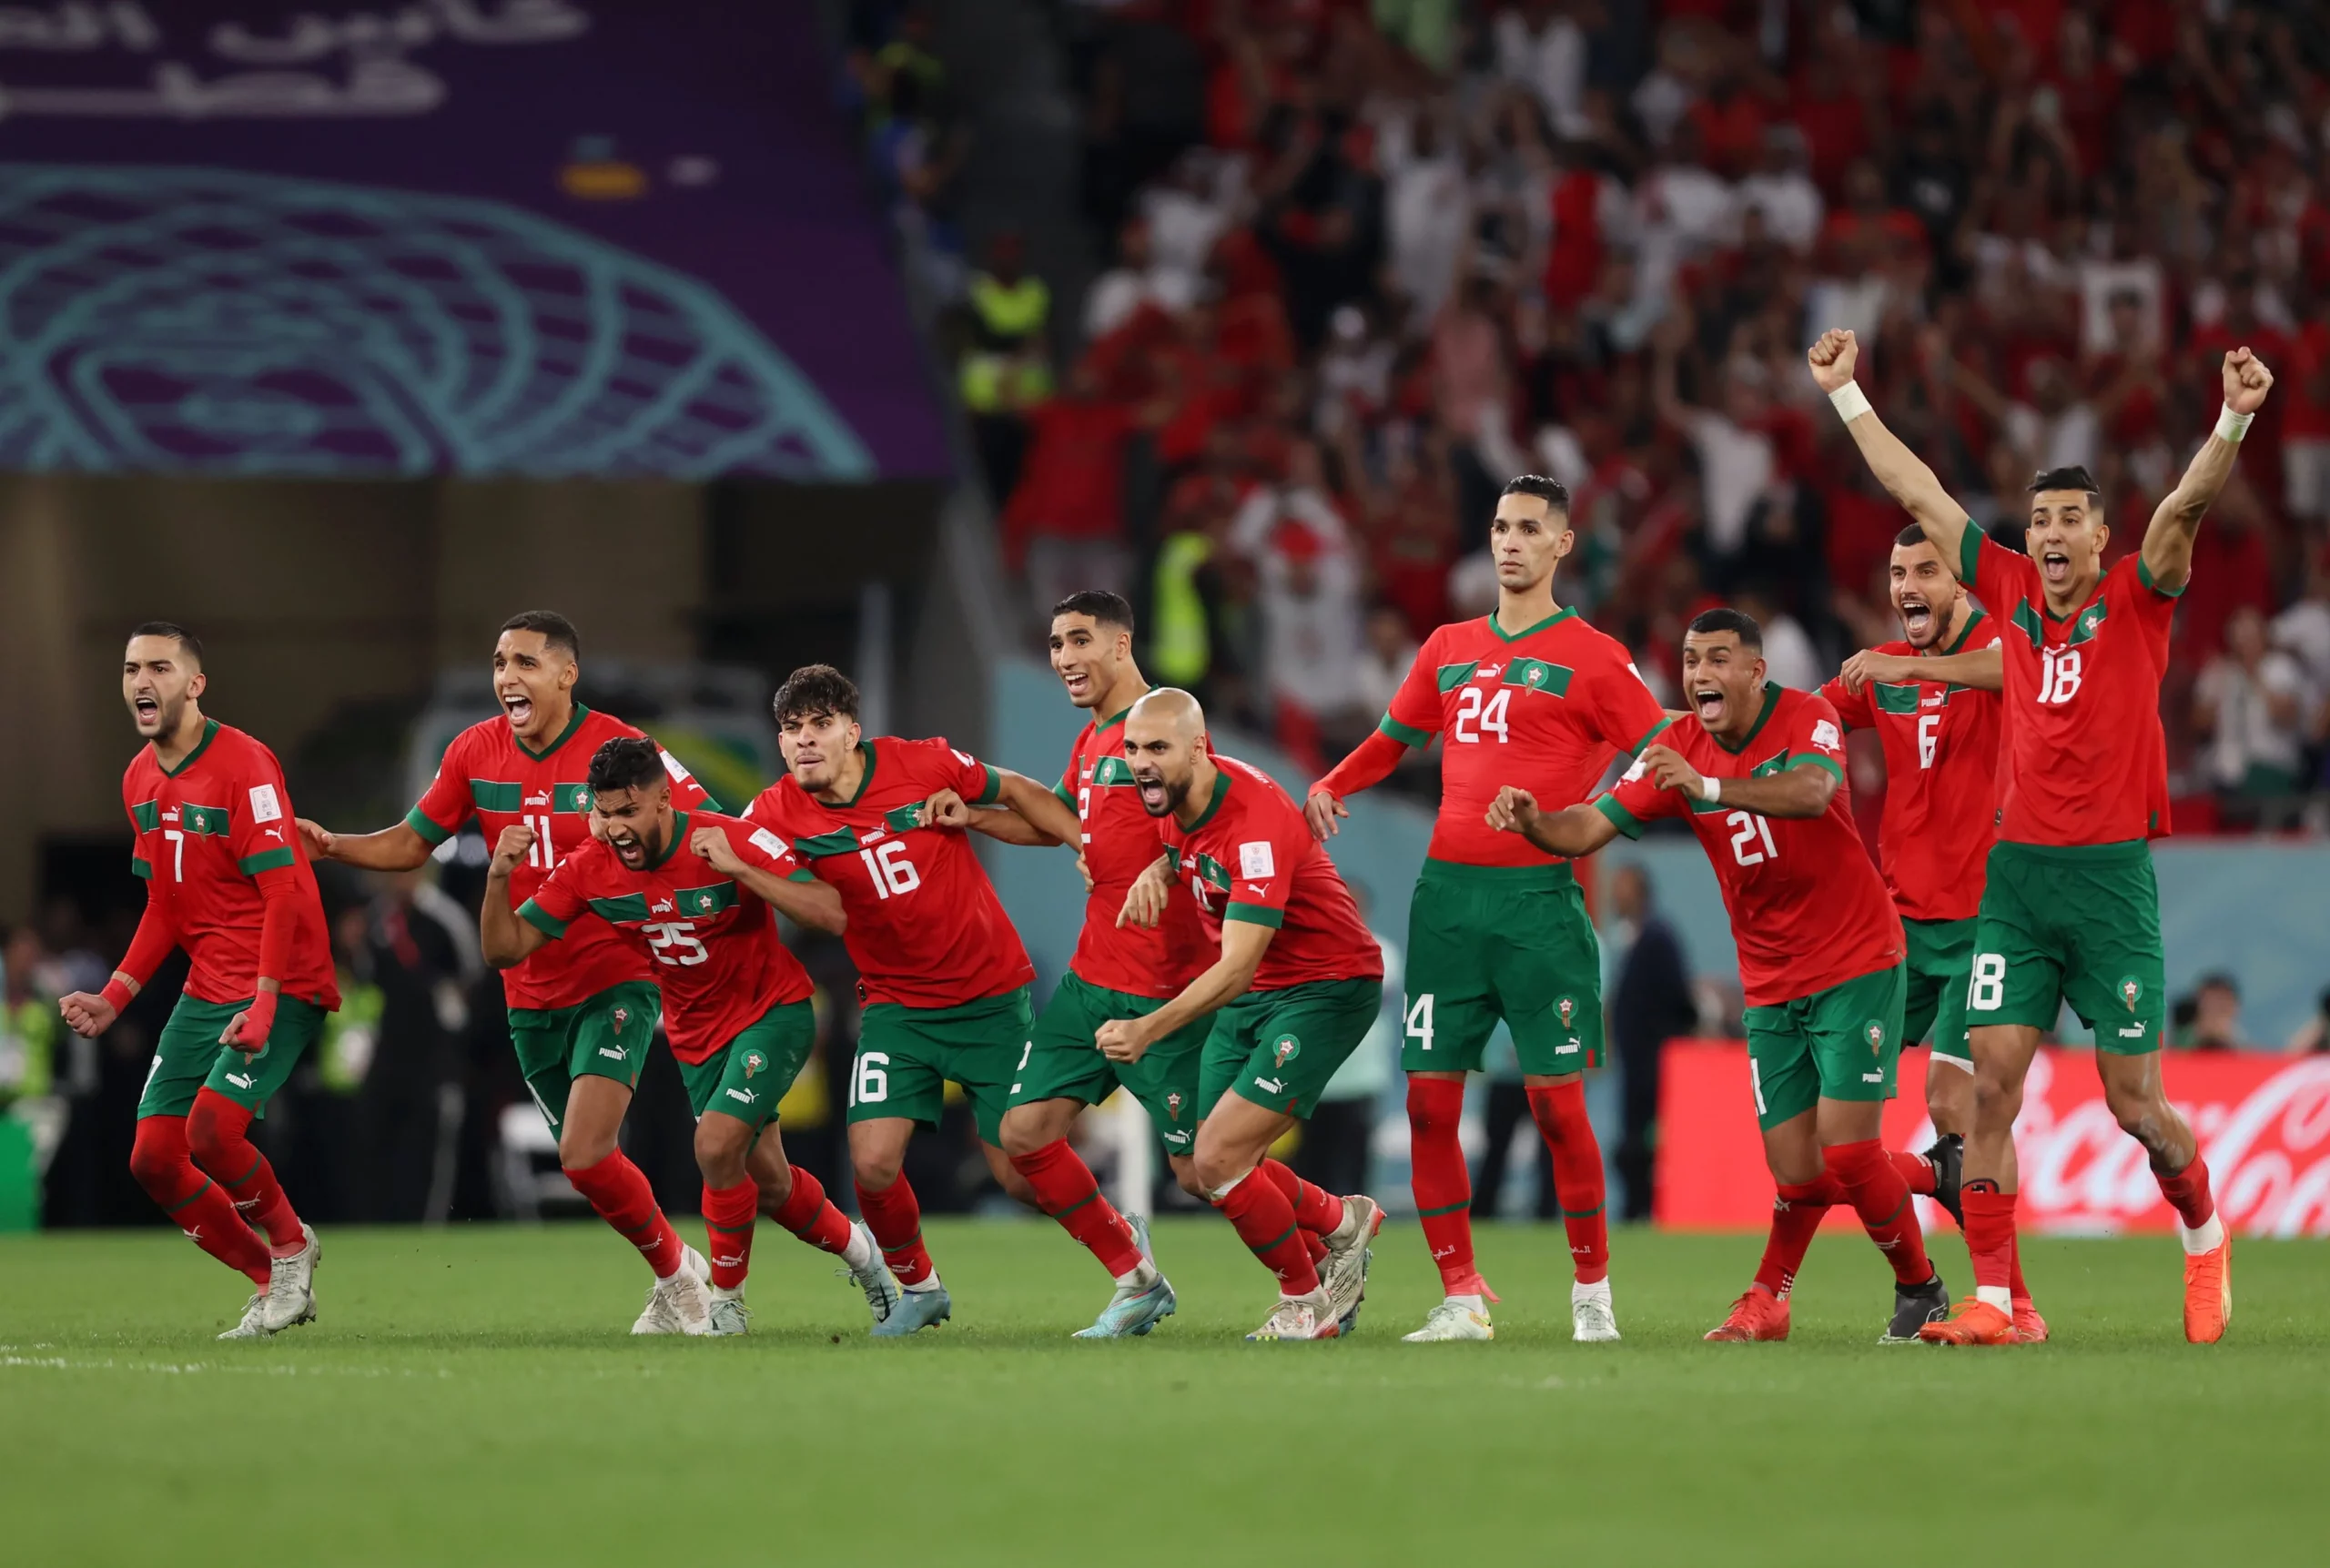 ¡Histórico! Marruecos a cuarto del Mundial tras dejar a España en los penales 